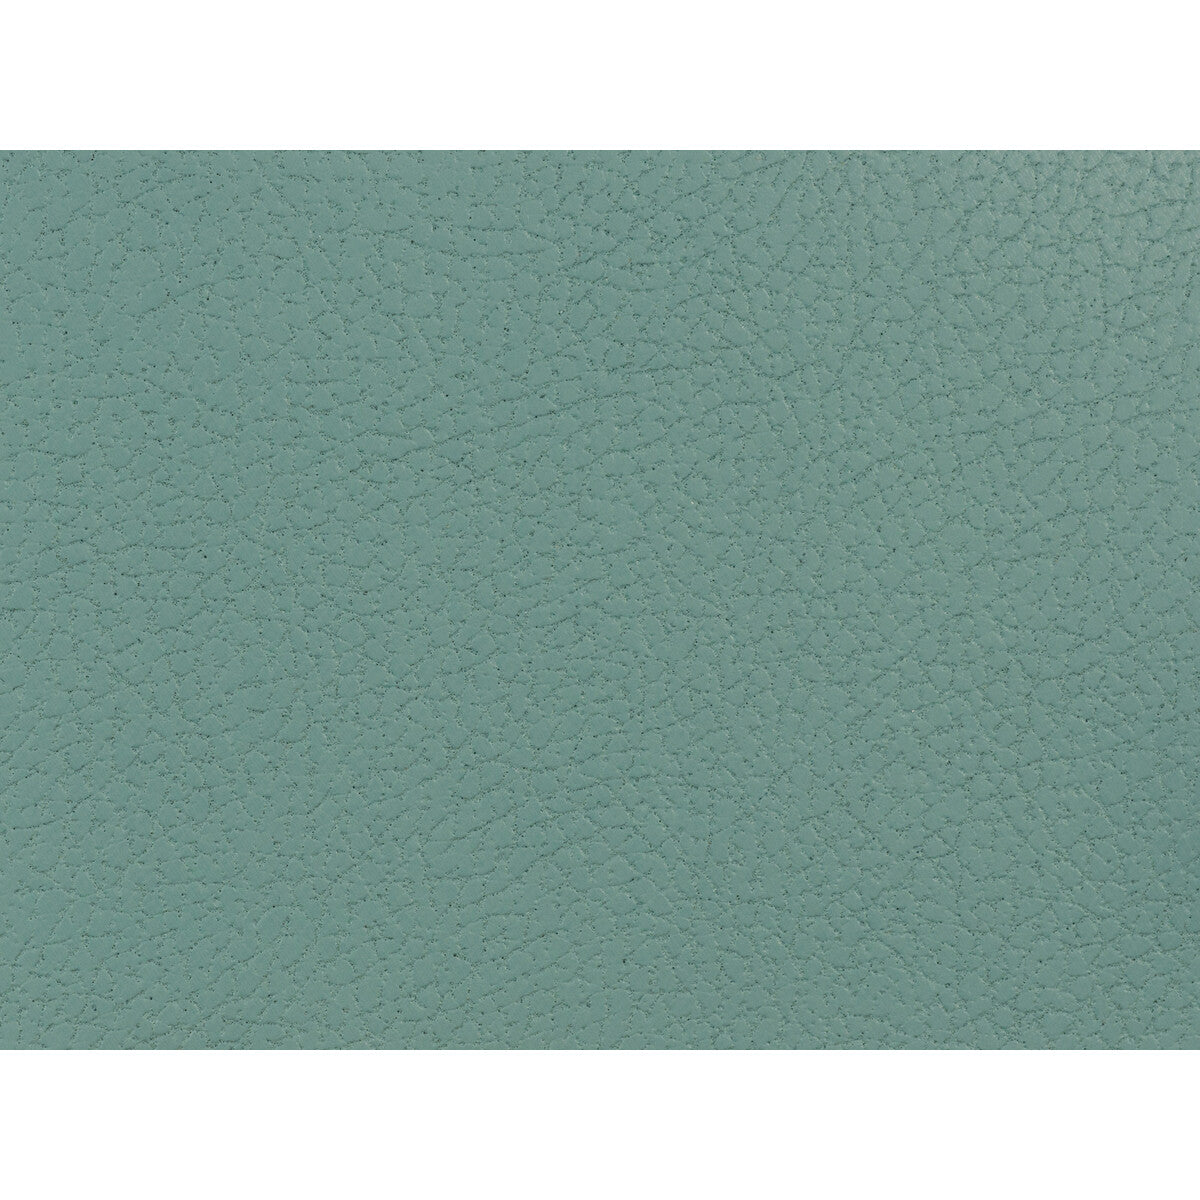 Kravet Design fabric in genslar-115 color - pattern GENSLAR.115.0 - by Kravet Design